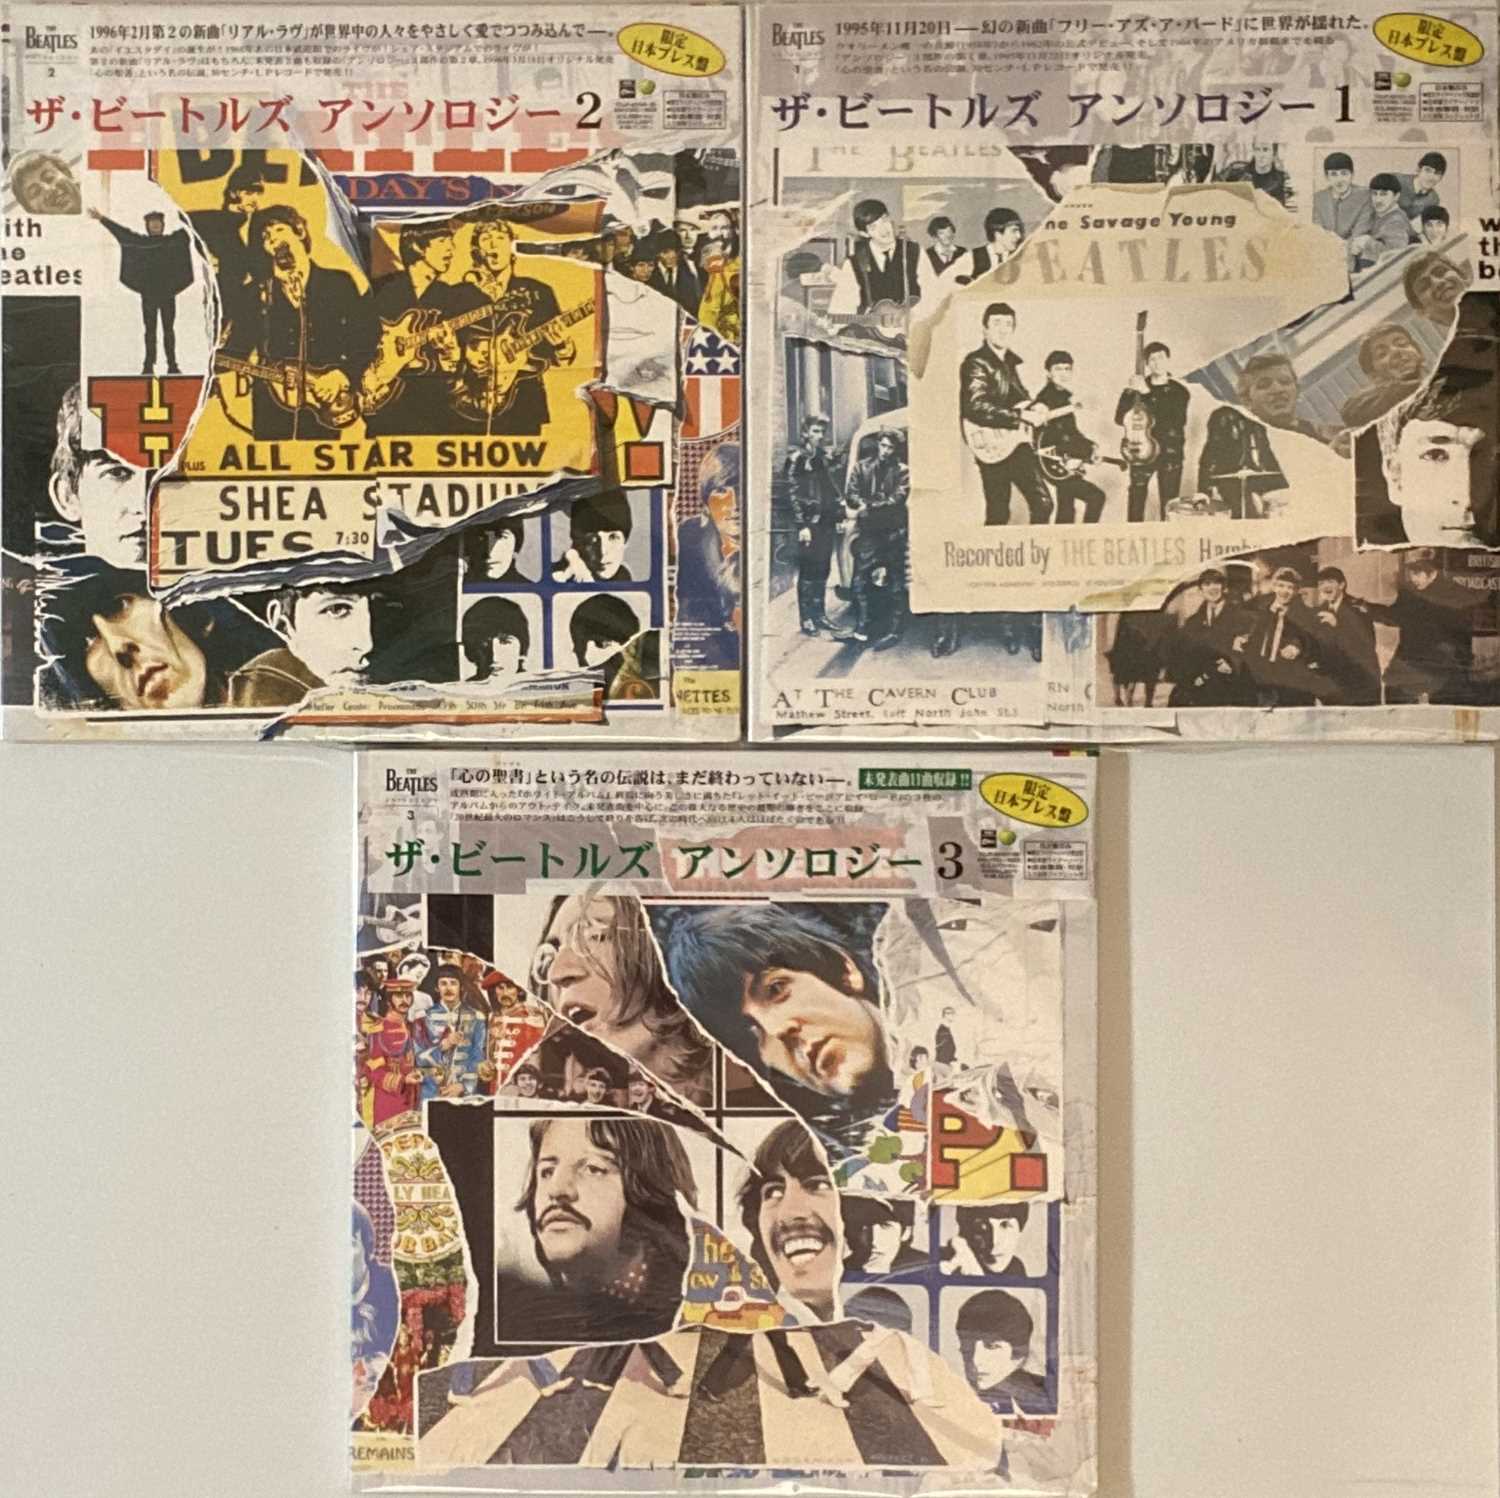 Lot 934 The Beatles Anthology 1 2 3 Japanese